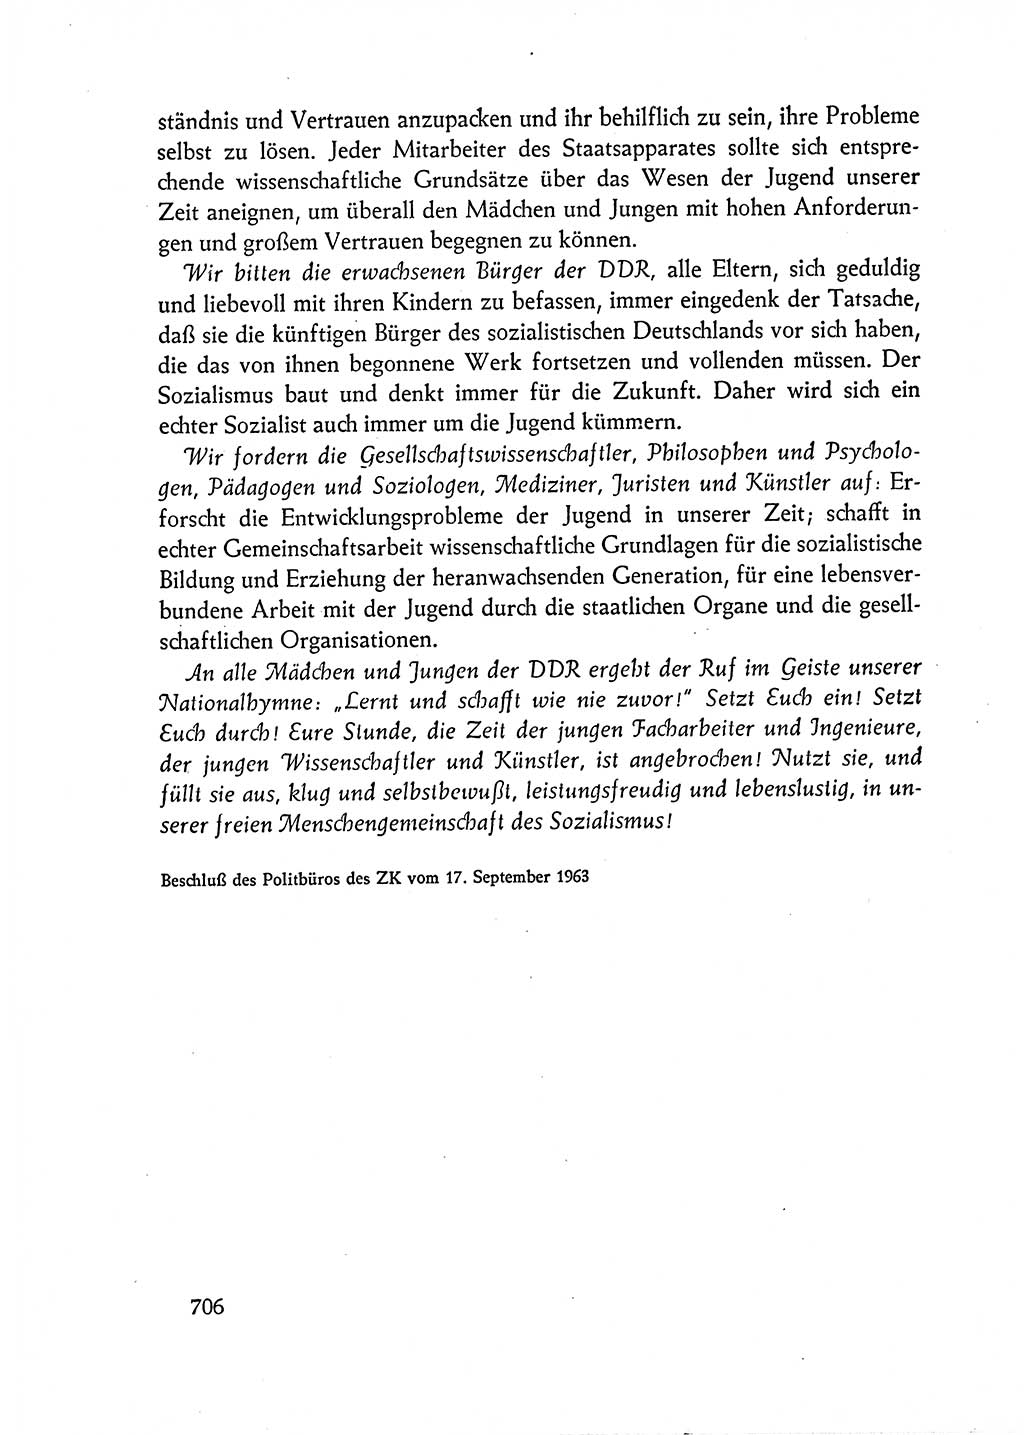 Dokumente der Sozialistischen Einheitspartei Deutschlands (SED) [Deutsche Demokratische Republik (DDR)] 1962-1963, Seite 706 (Dok. SED DDR 1962-1963, S. 706)